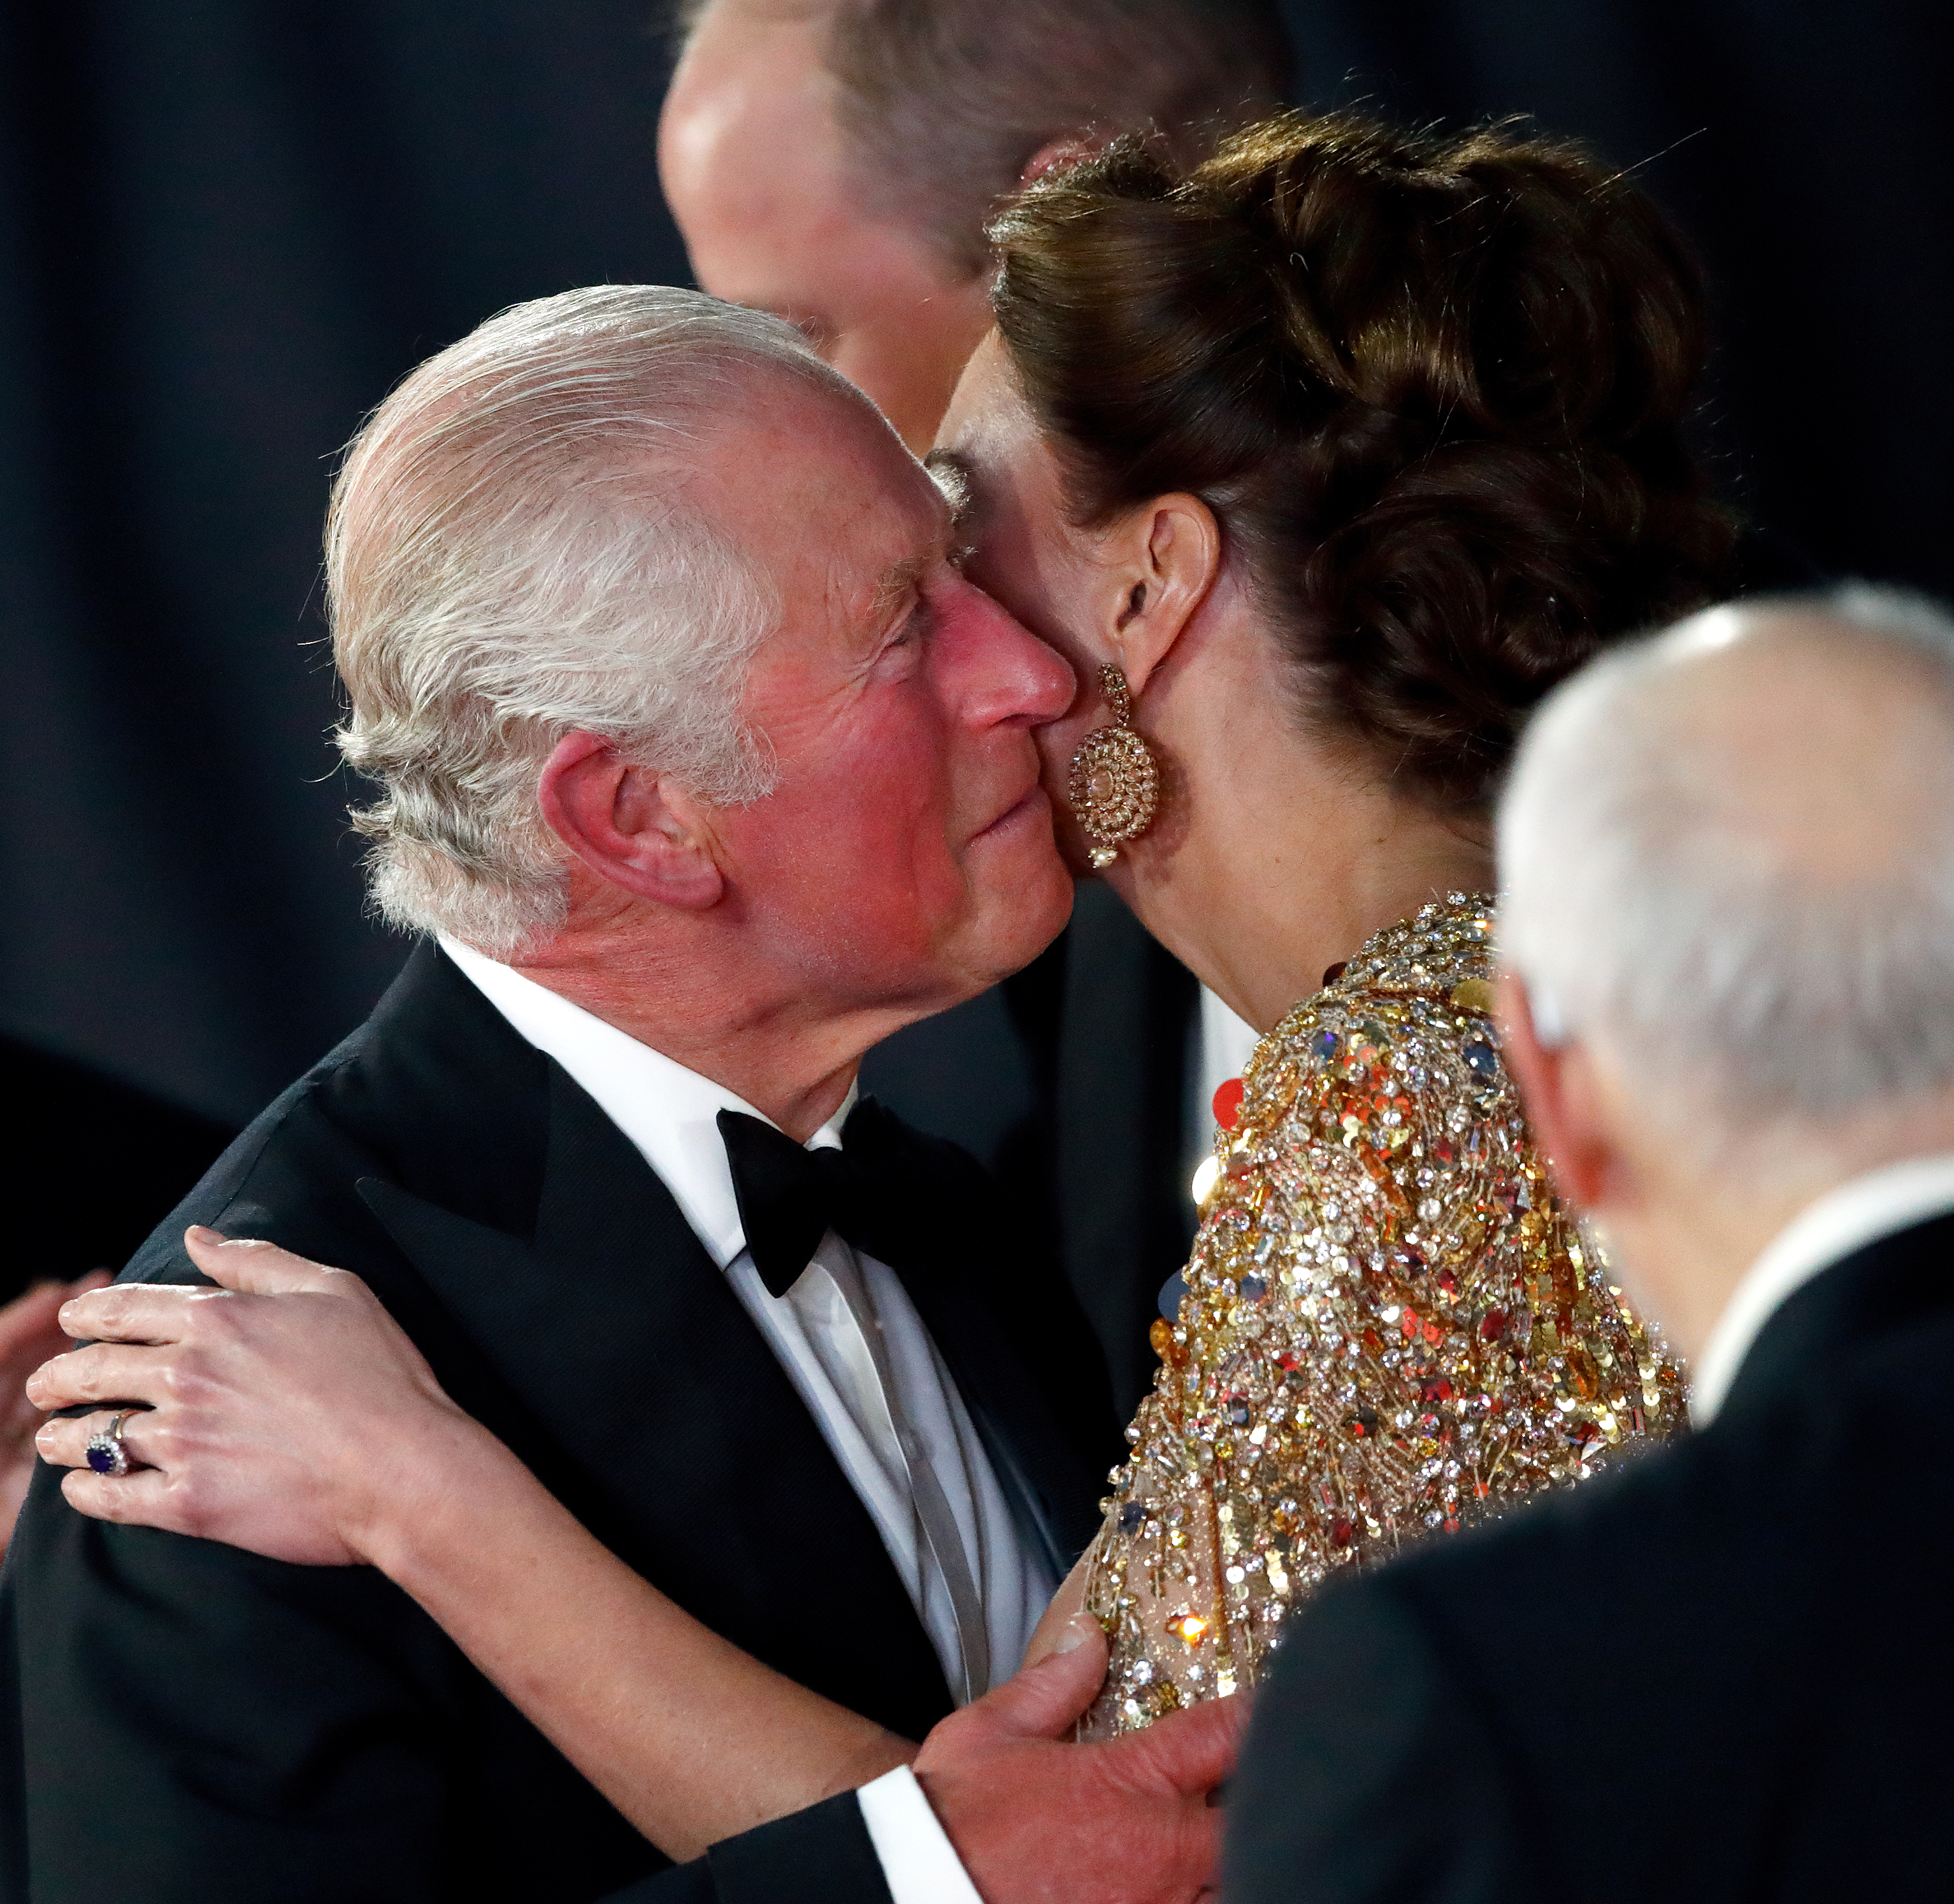 Le roi Charles III embrasse la princesse de Galles lors de la première mondiale de ""No Time To Die"" à Londres en 2021 | Source : Getty Images